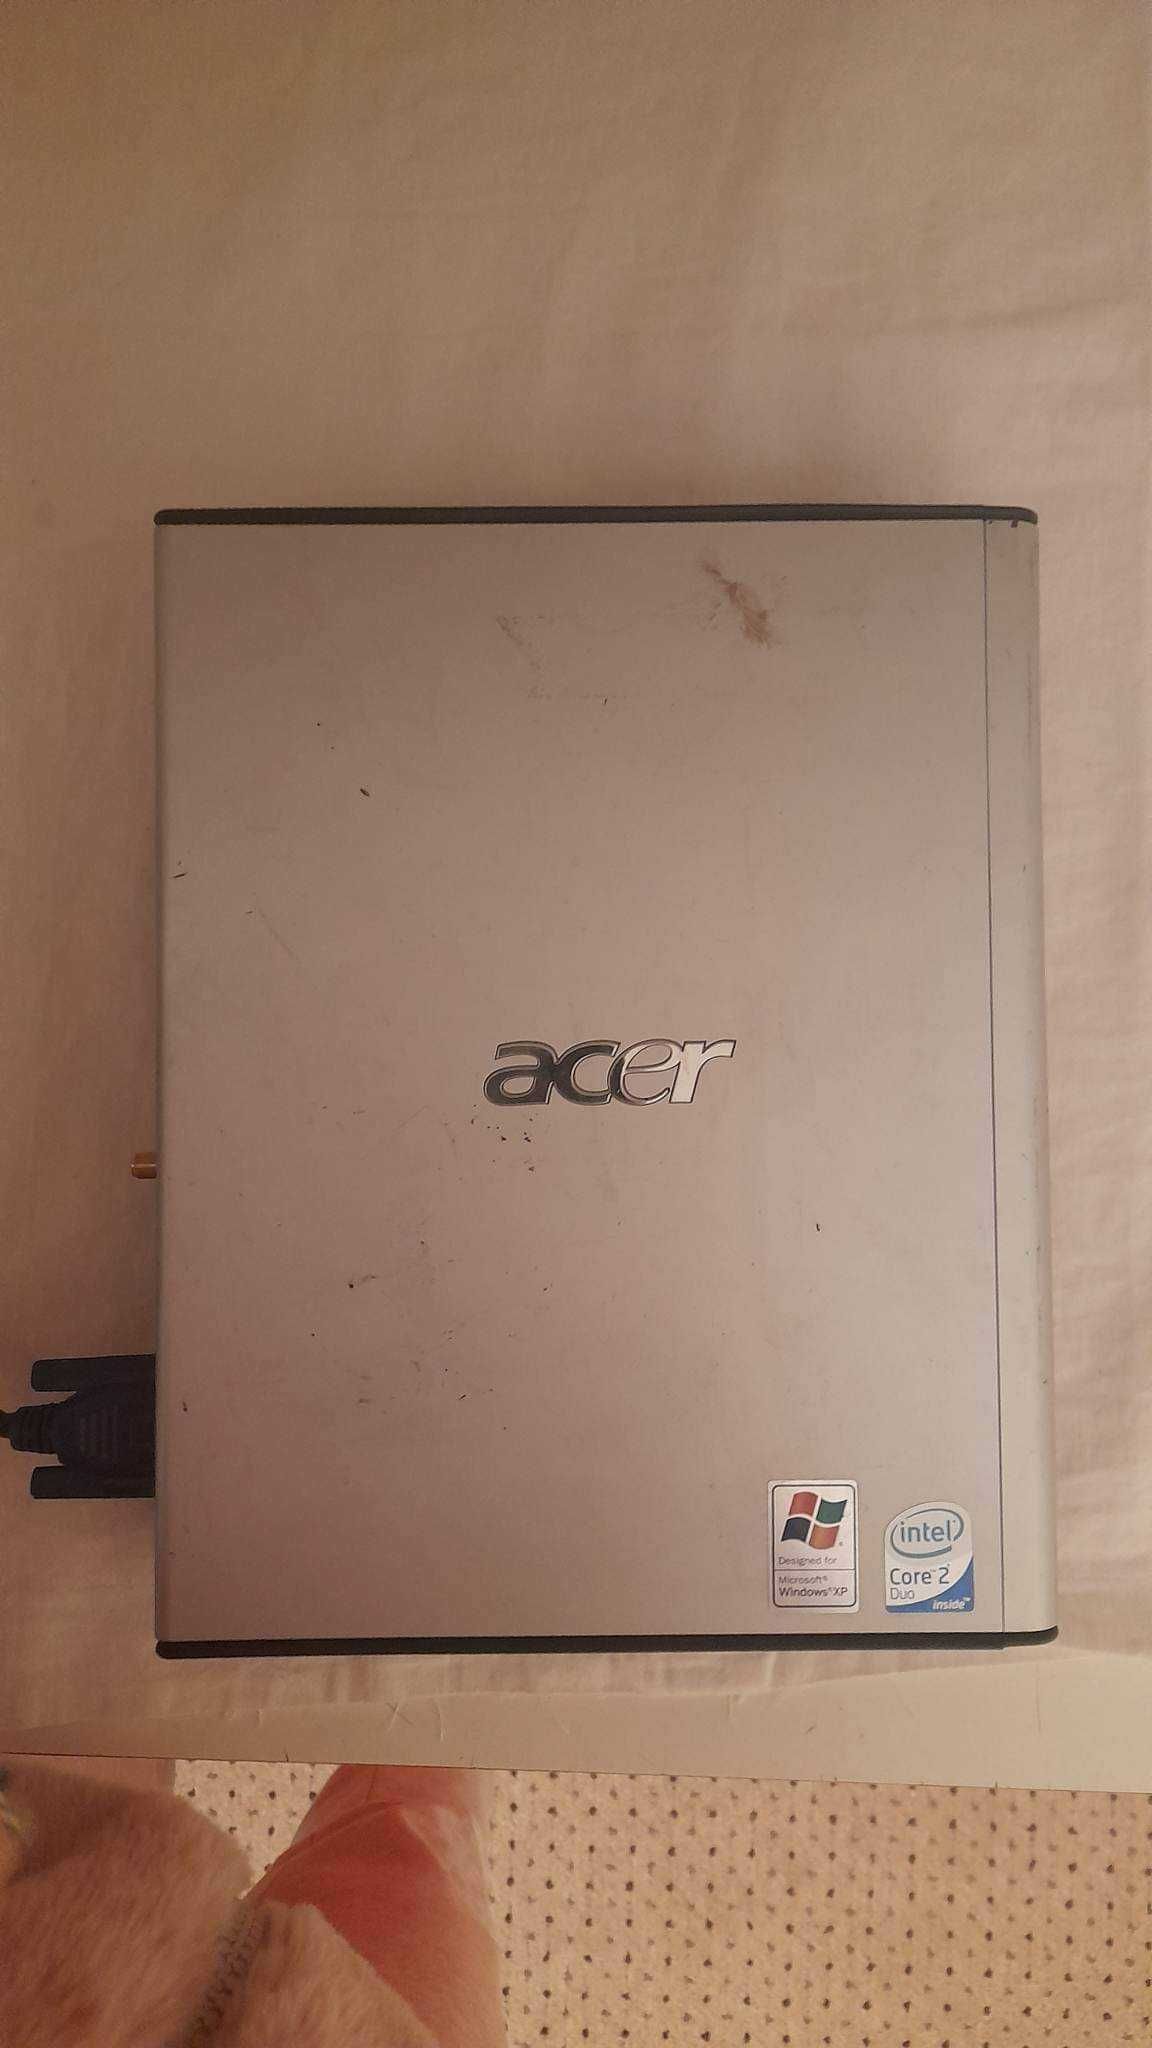 Acer power 2000 intel celeron d 3.20 ghz usff pc cu alimentare